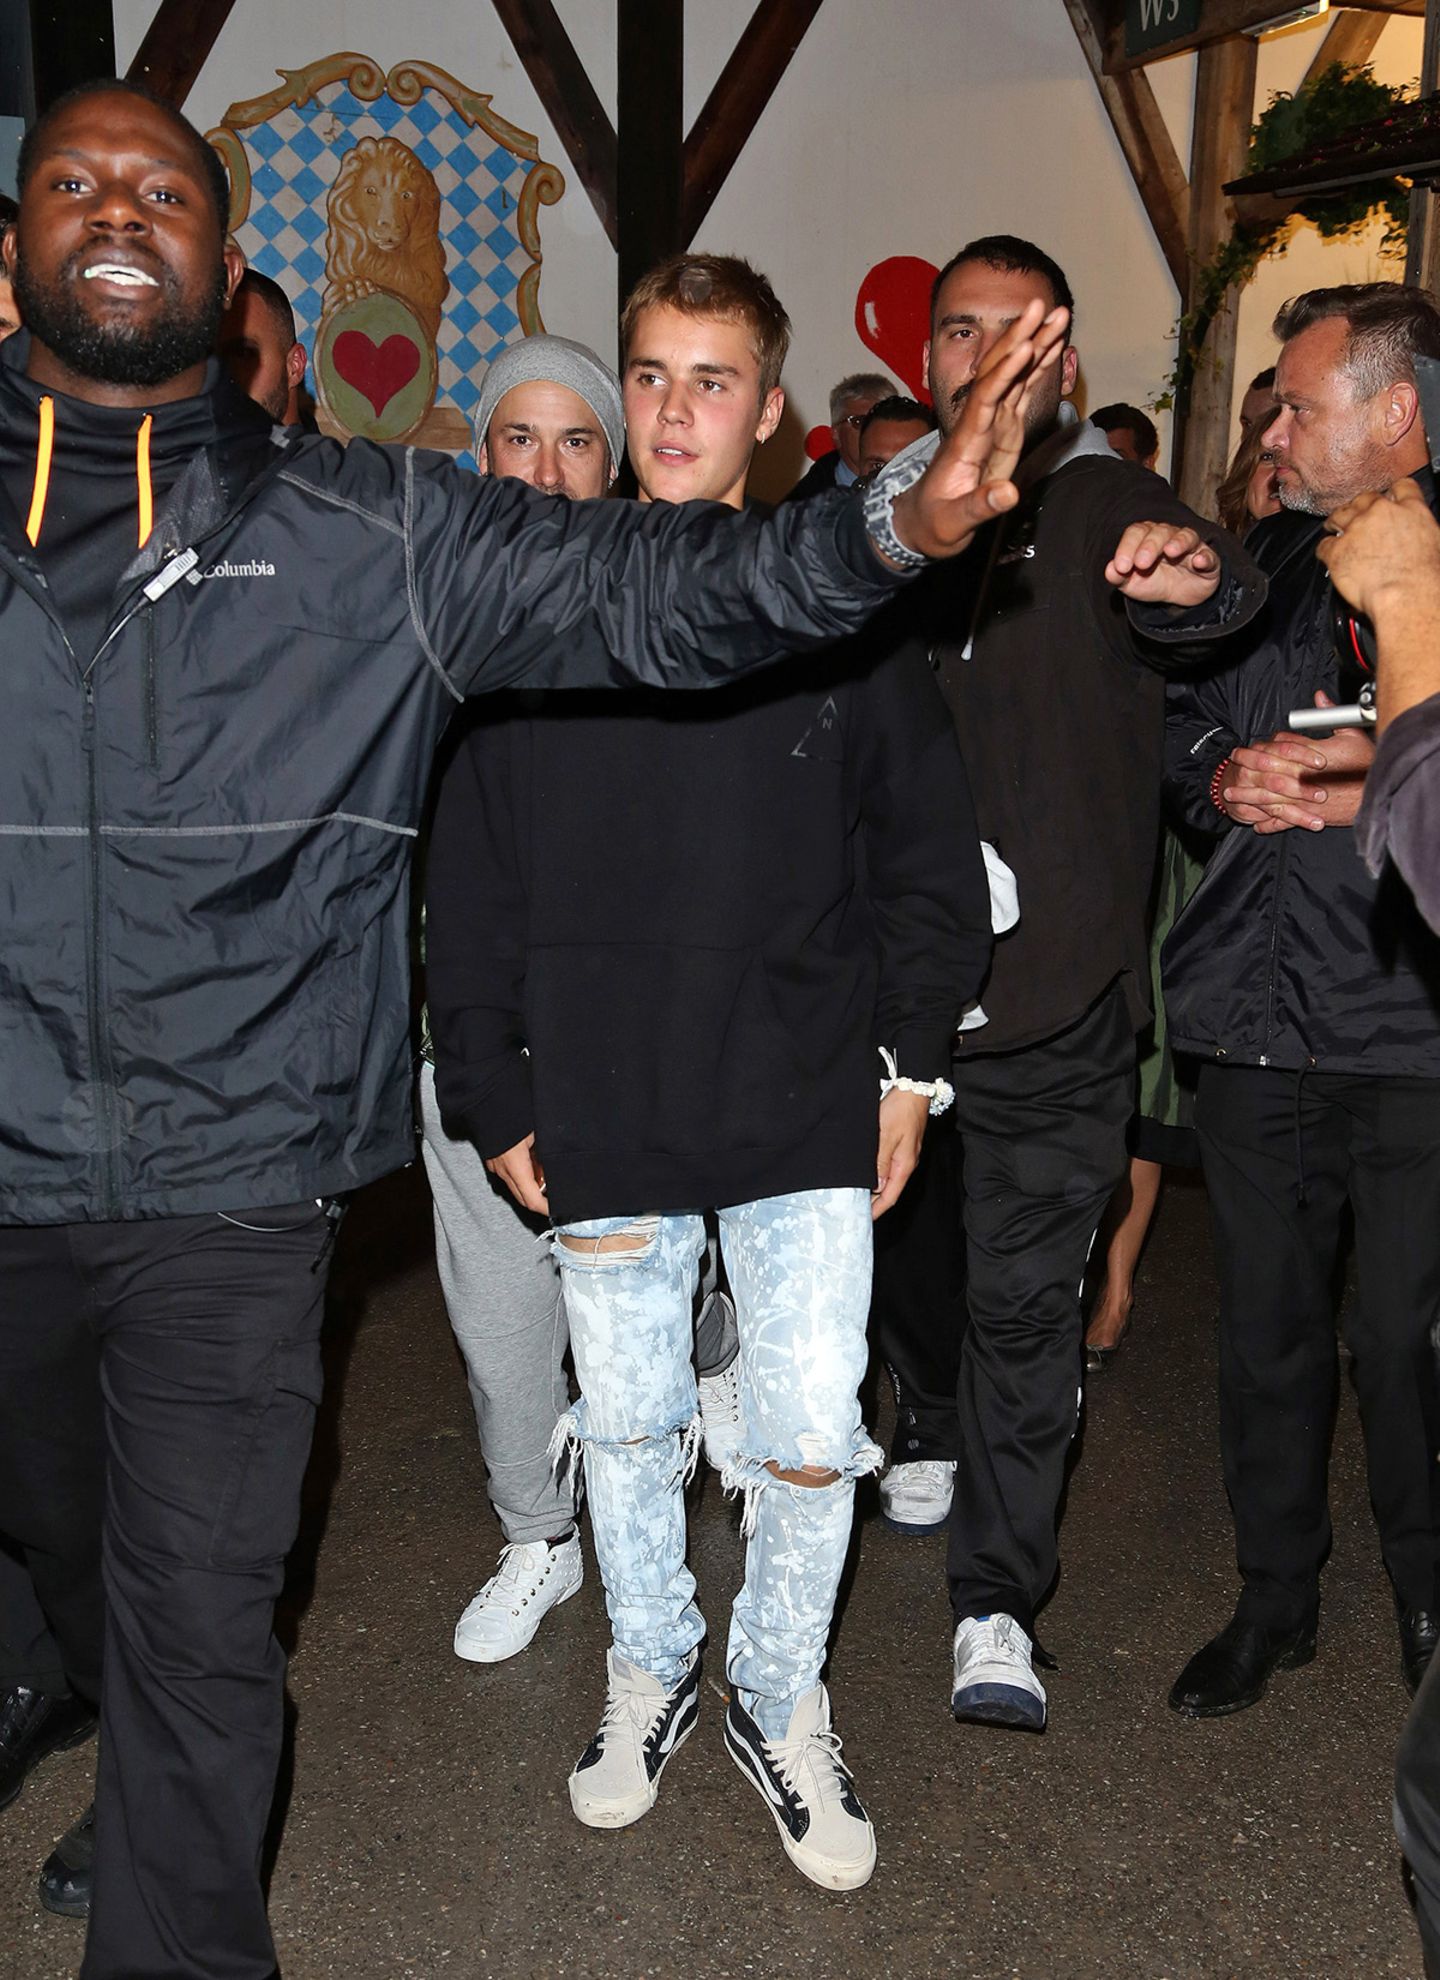 Ein Bieber in Bayern! Genauer gesagt gleich zwei, denn Überraschungsgast Justin Bieber hat bei seinem Besuch des Oktoberfests gleich seinen Vater Jeremy mitgebracht. Ebenso wie jede Menge Bodyguards.